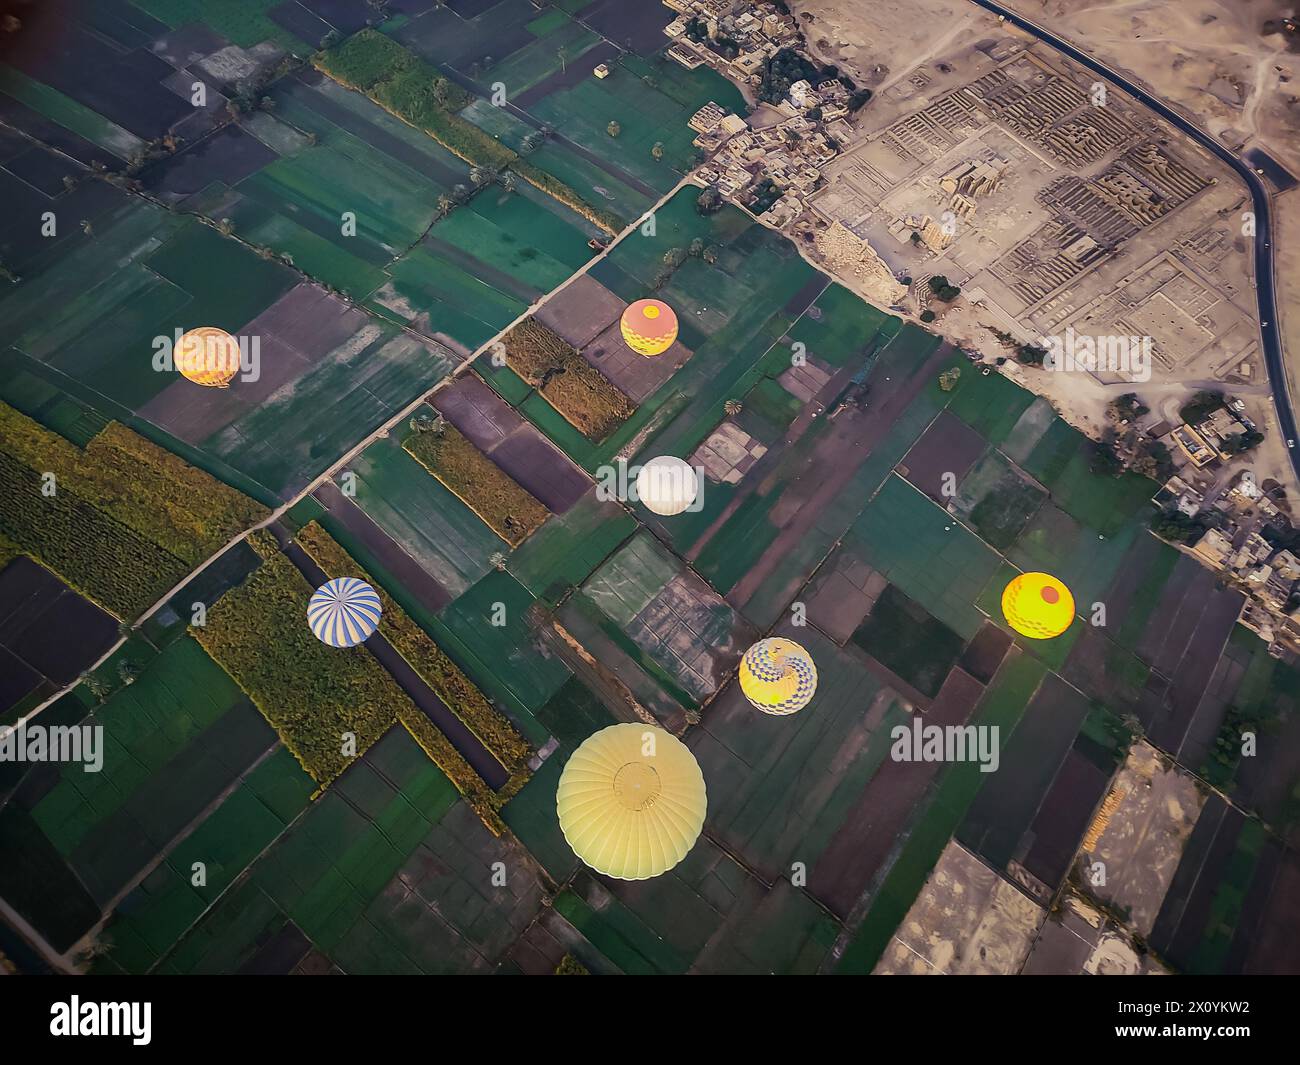 Vue depuis une montgolfière de la fertile vallée du Nil en Cisjordanie et de la vallée historique des Rois près de Louxor Banque D'Images